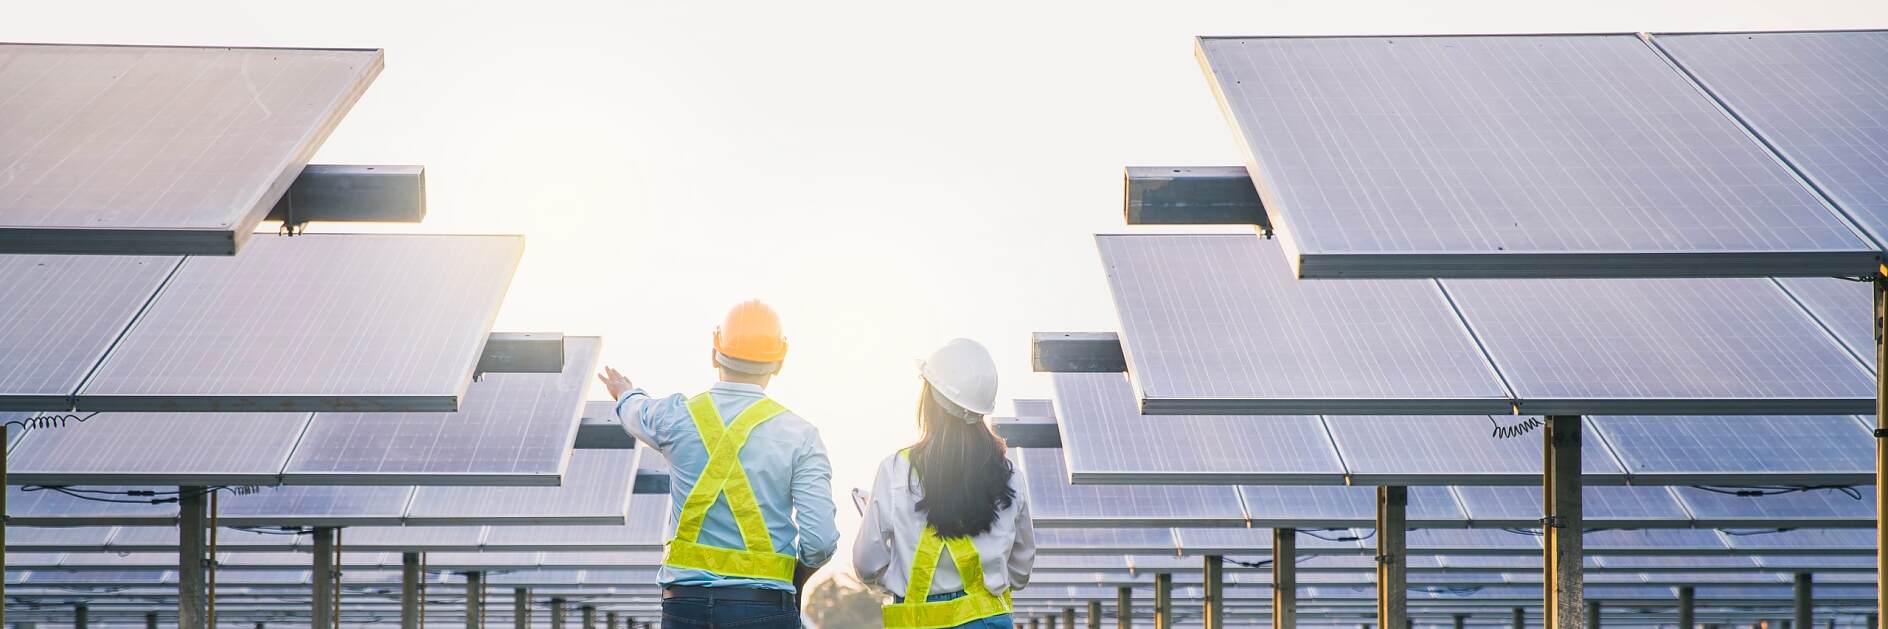 男女员工维护太阳能收集板。在太阳能发电行业检查和维护设备的工程师。